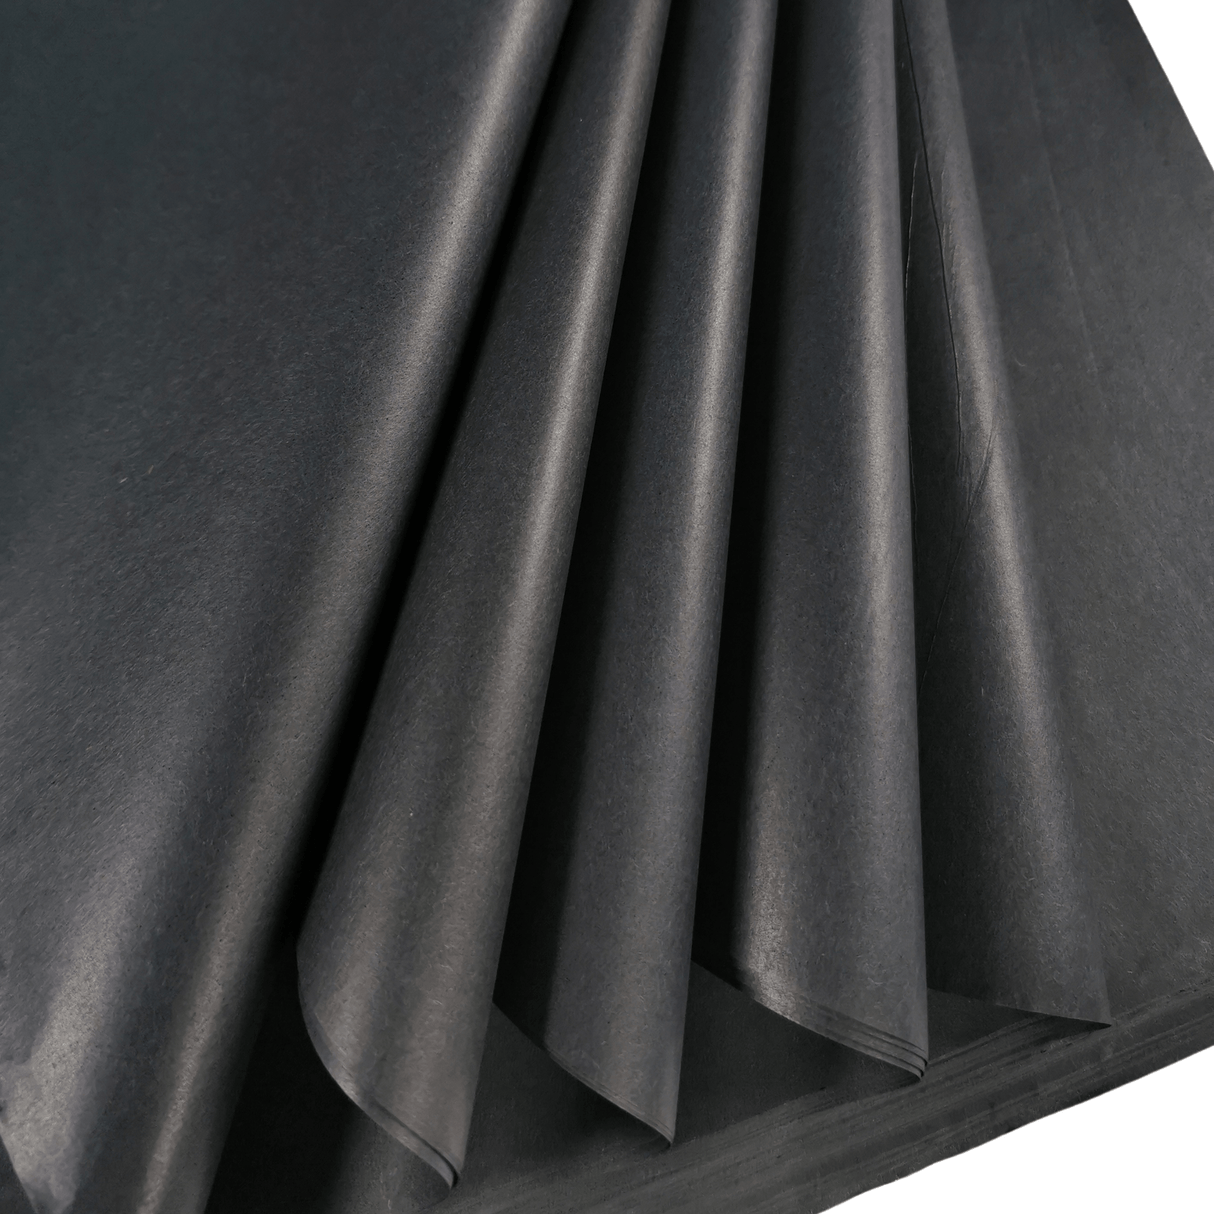 Black Tissue Paper Folds 2